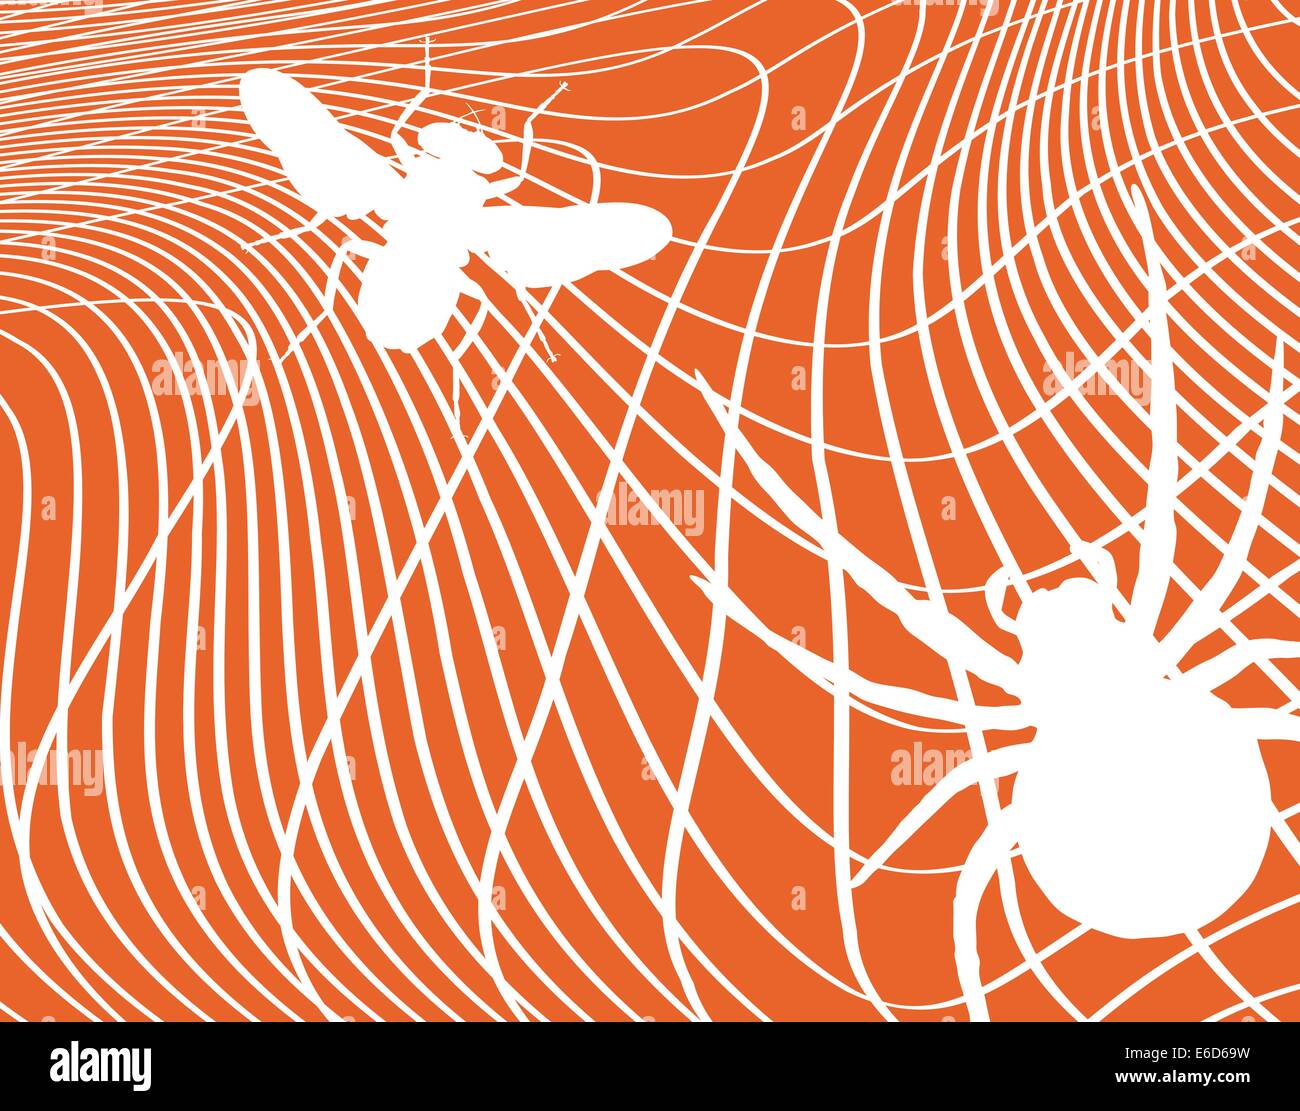 Illustration vectorielle modifiable d'une mouche piégée dans une toile d'araignée avec chaque élément comme un objet mobile Illustration de Vecteur